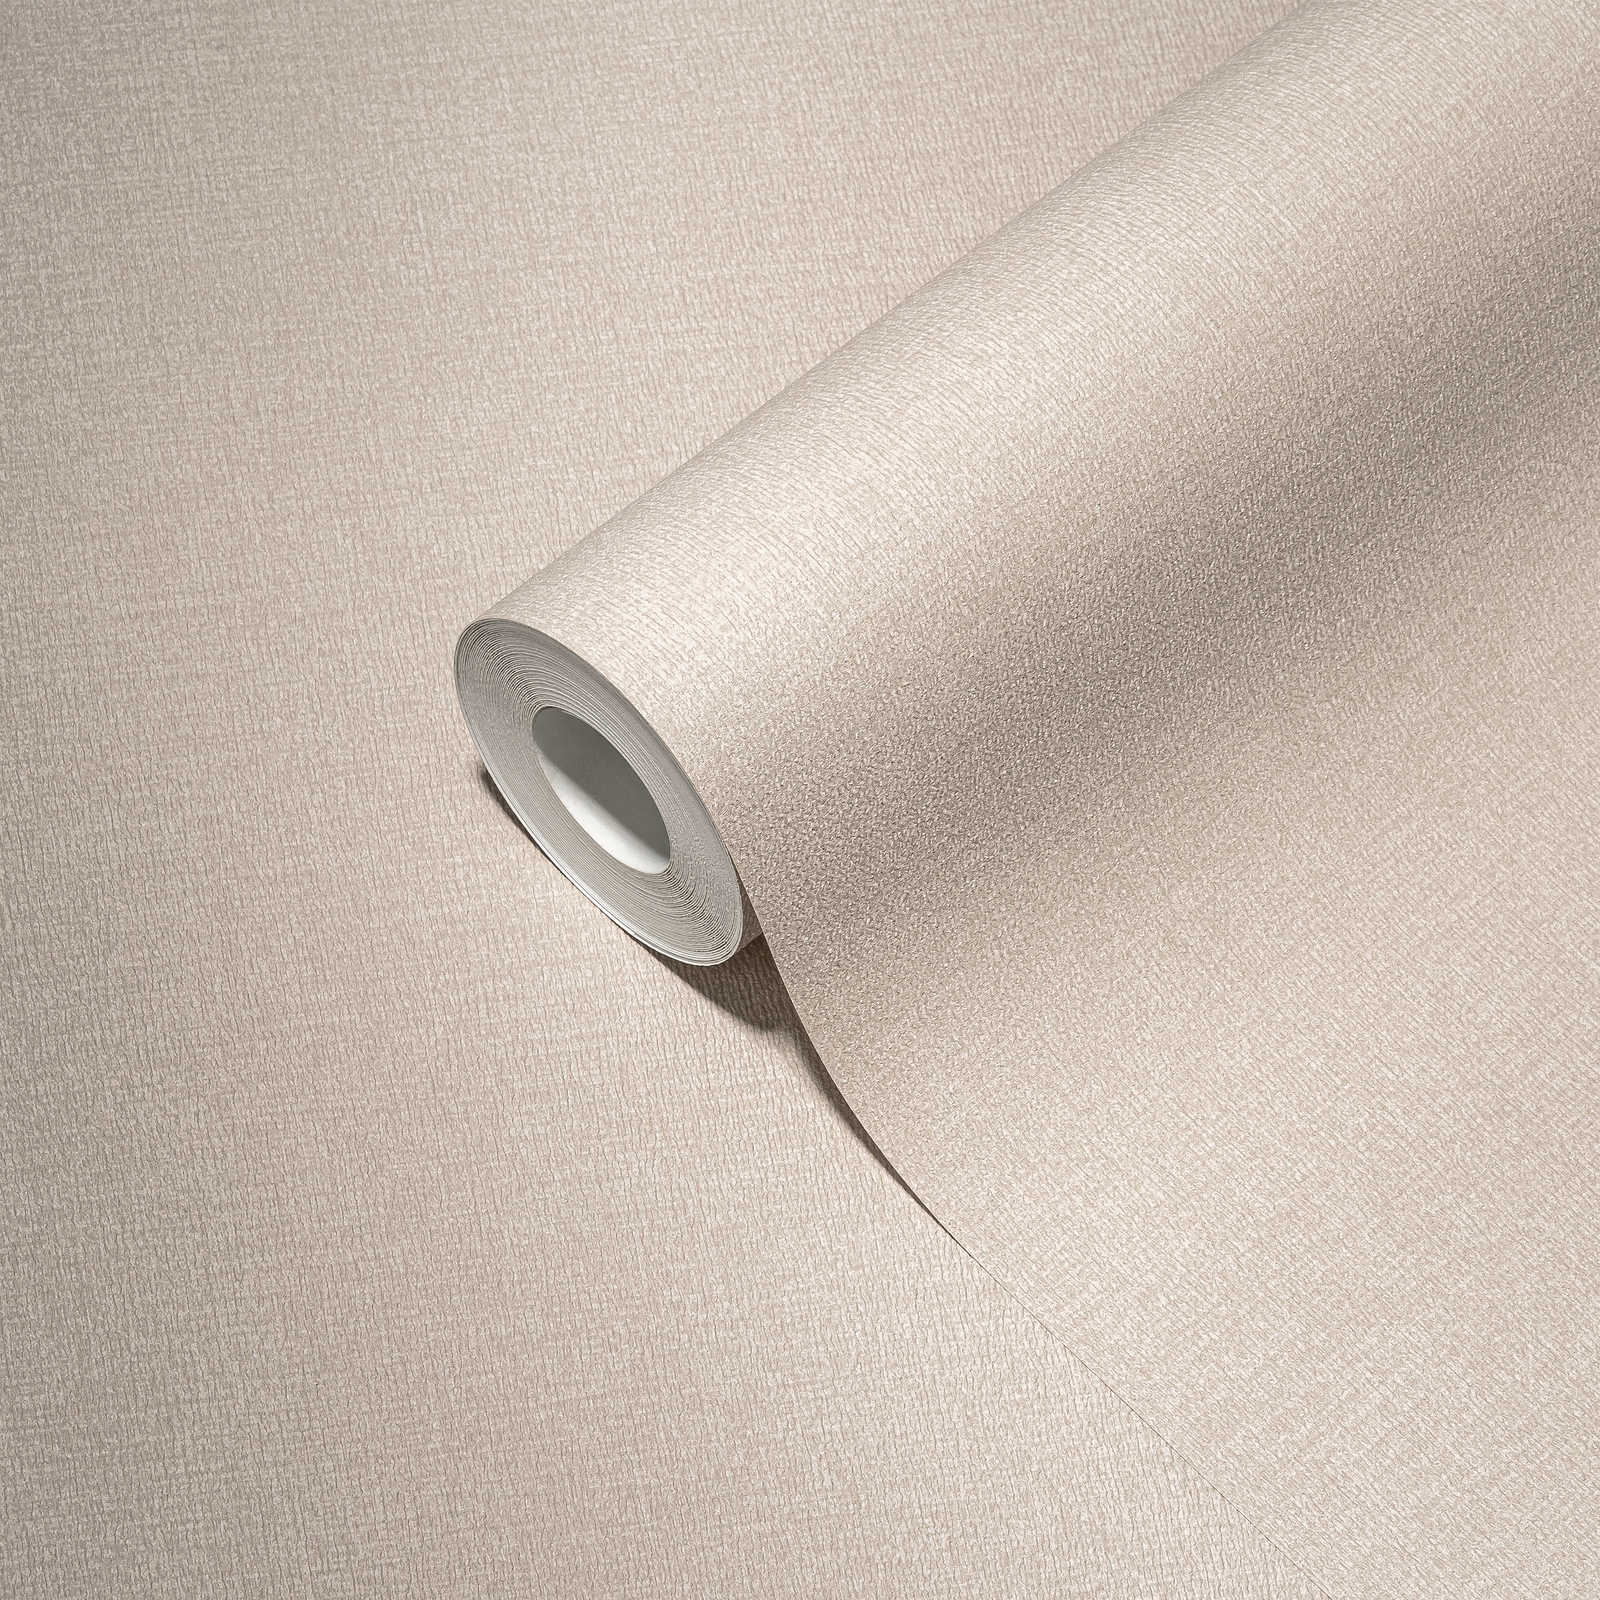             Carta da parati in tessuto non tessuto a tinta unita in colori tenui: grigio, grigio chiaro.
        